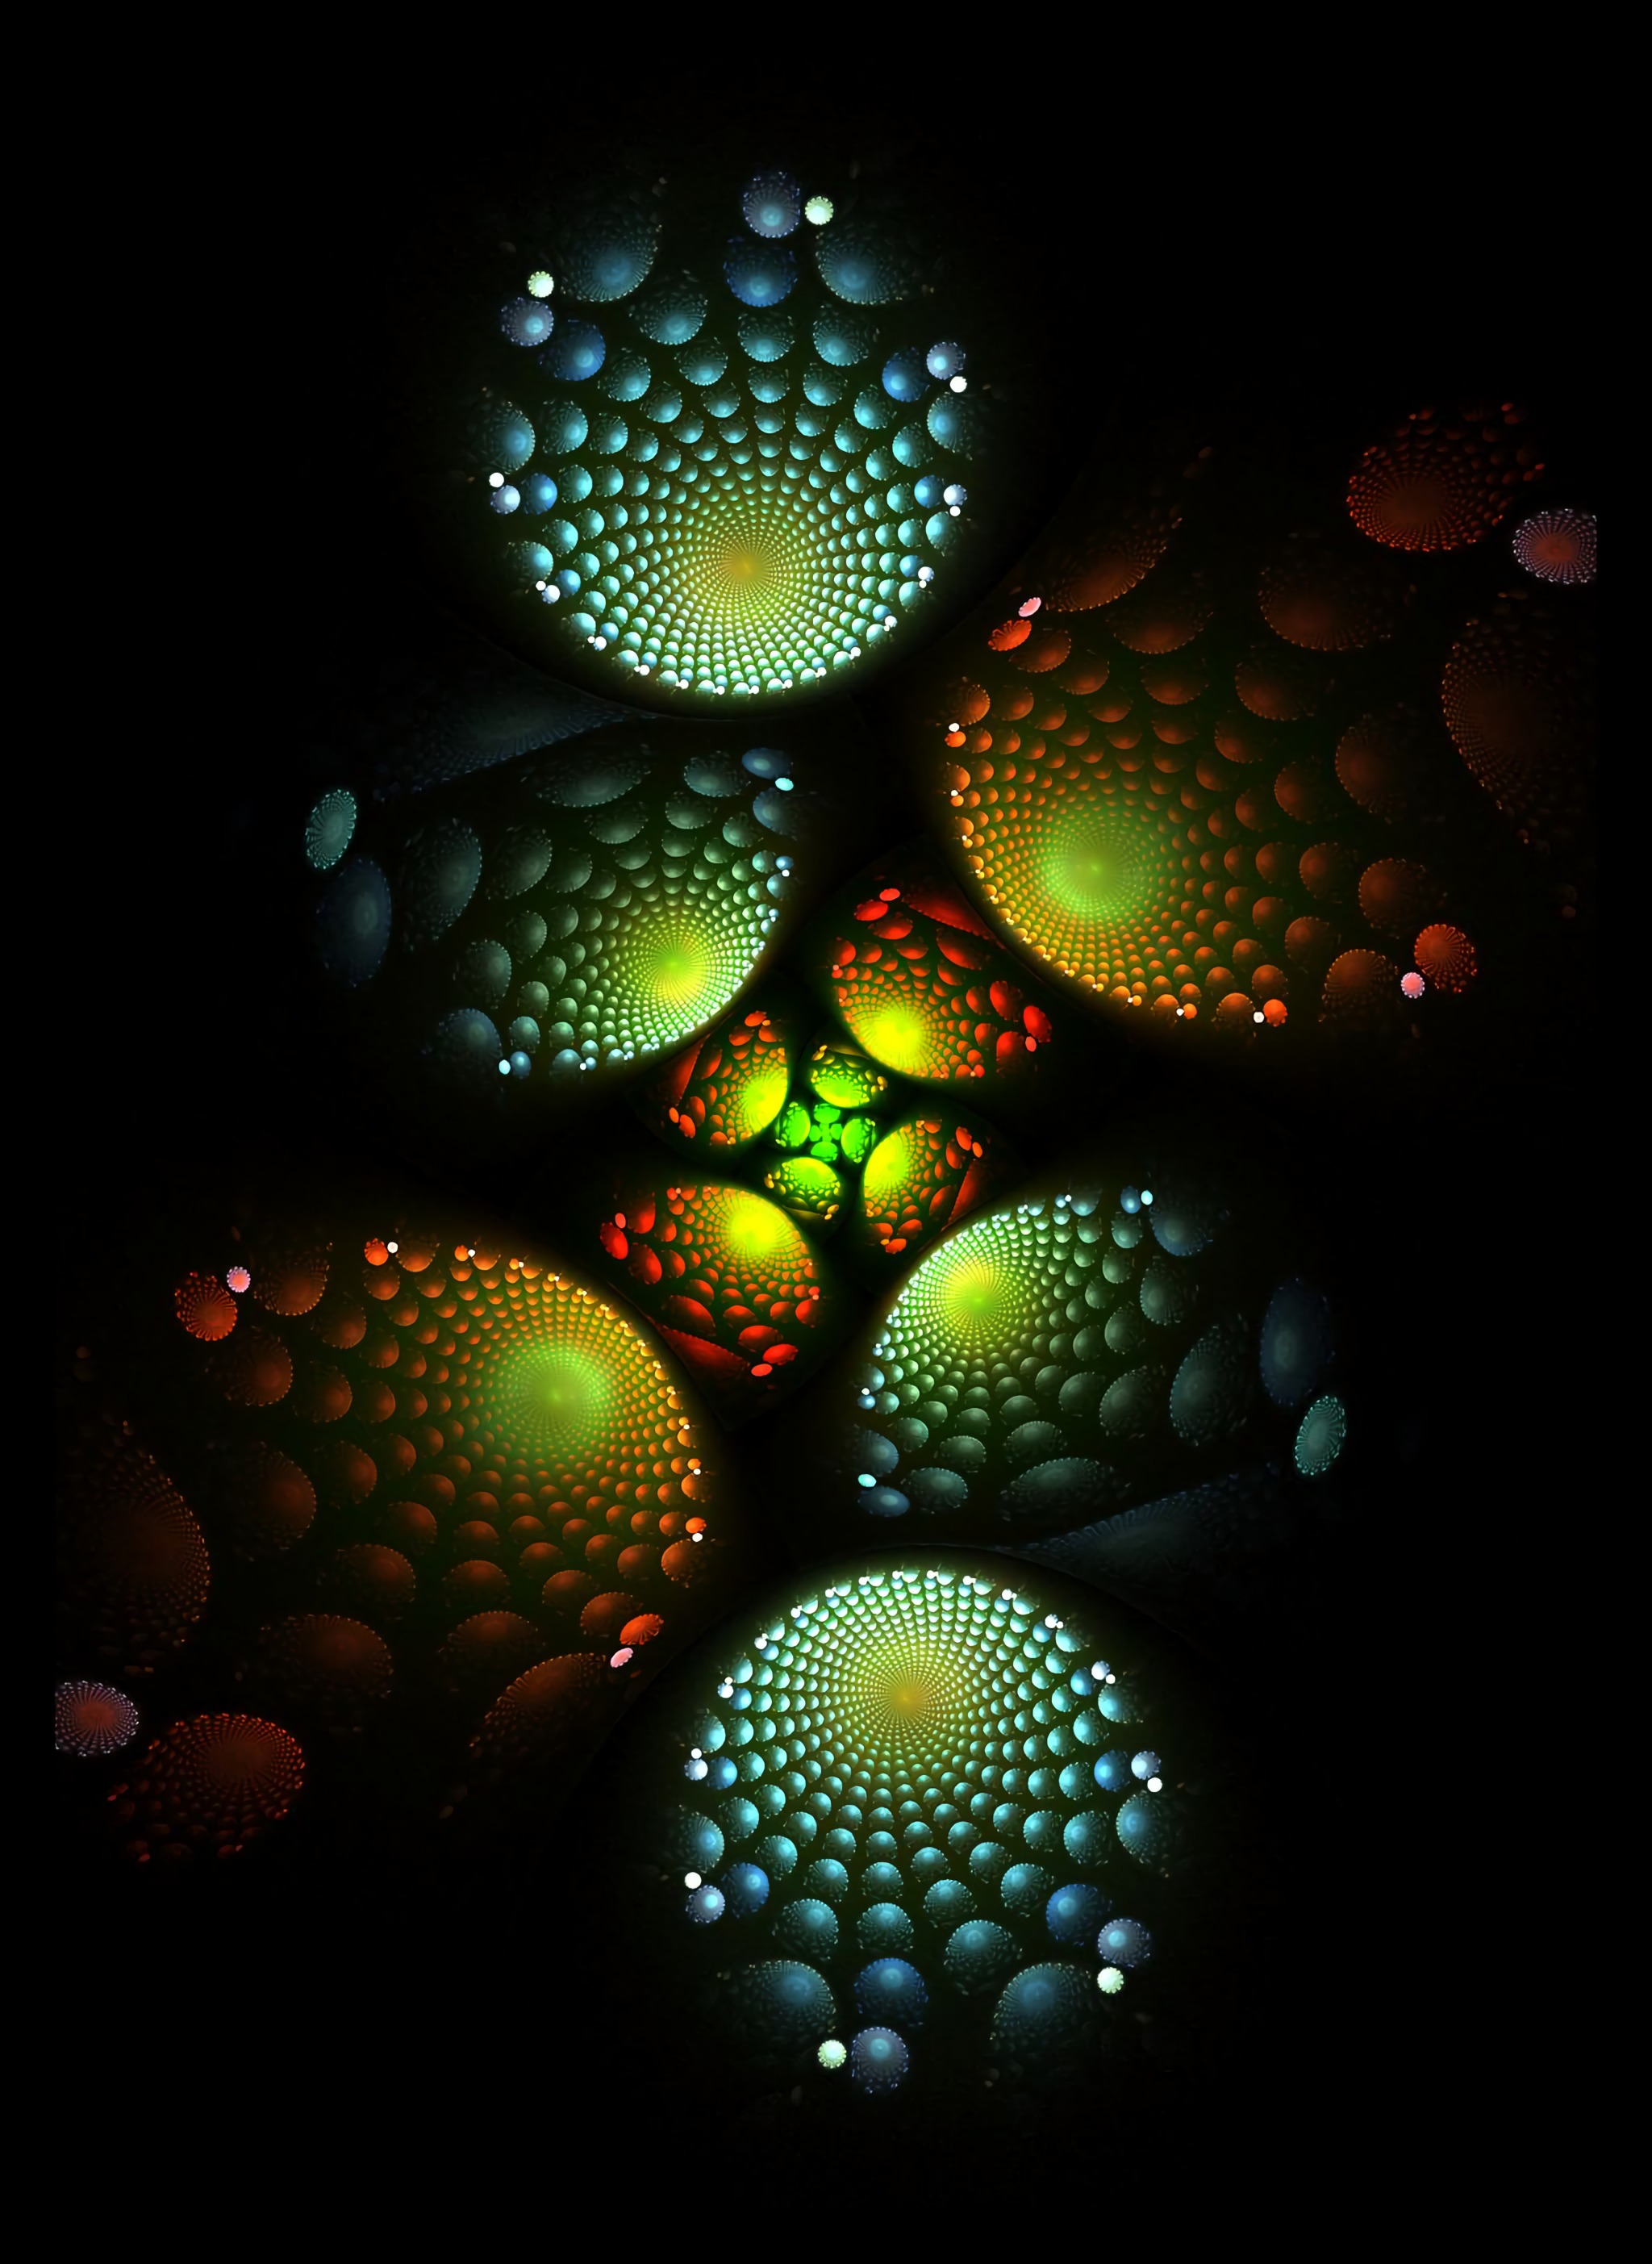 fractal, spirals, abstract, dark, glow, spiral